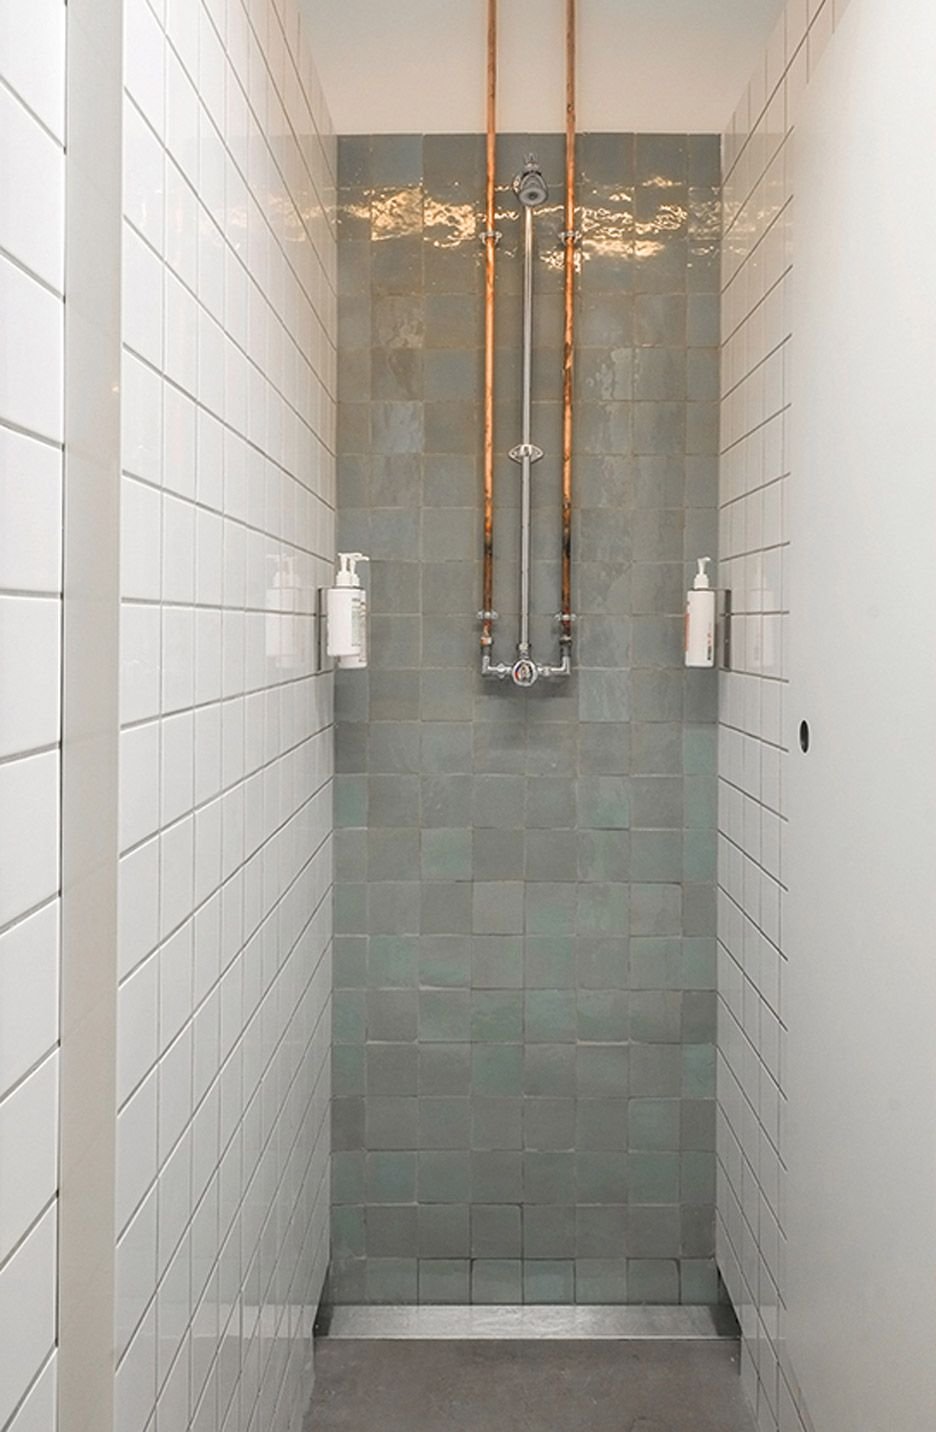 Gym shower room design